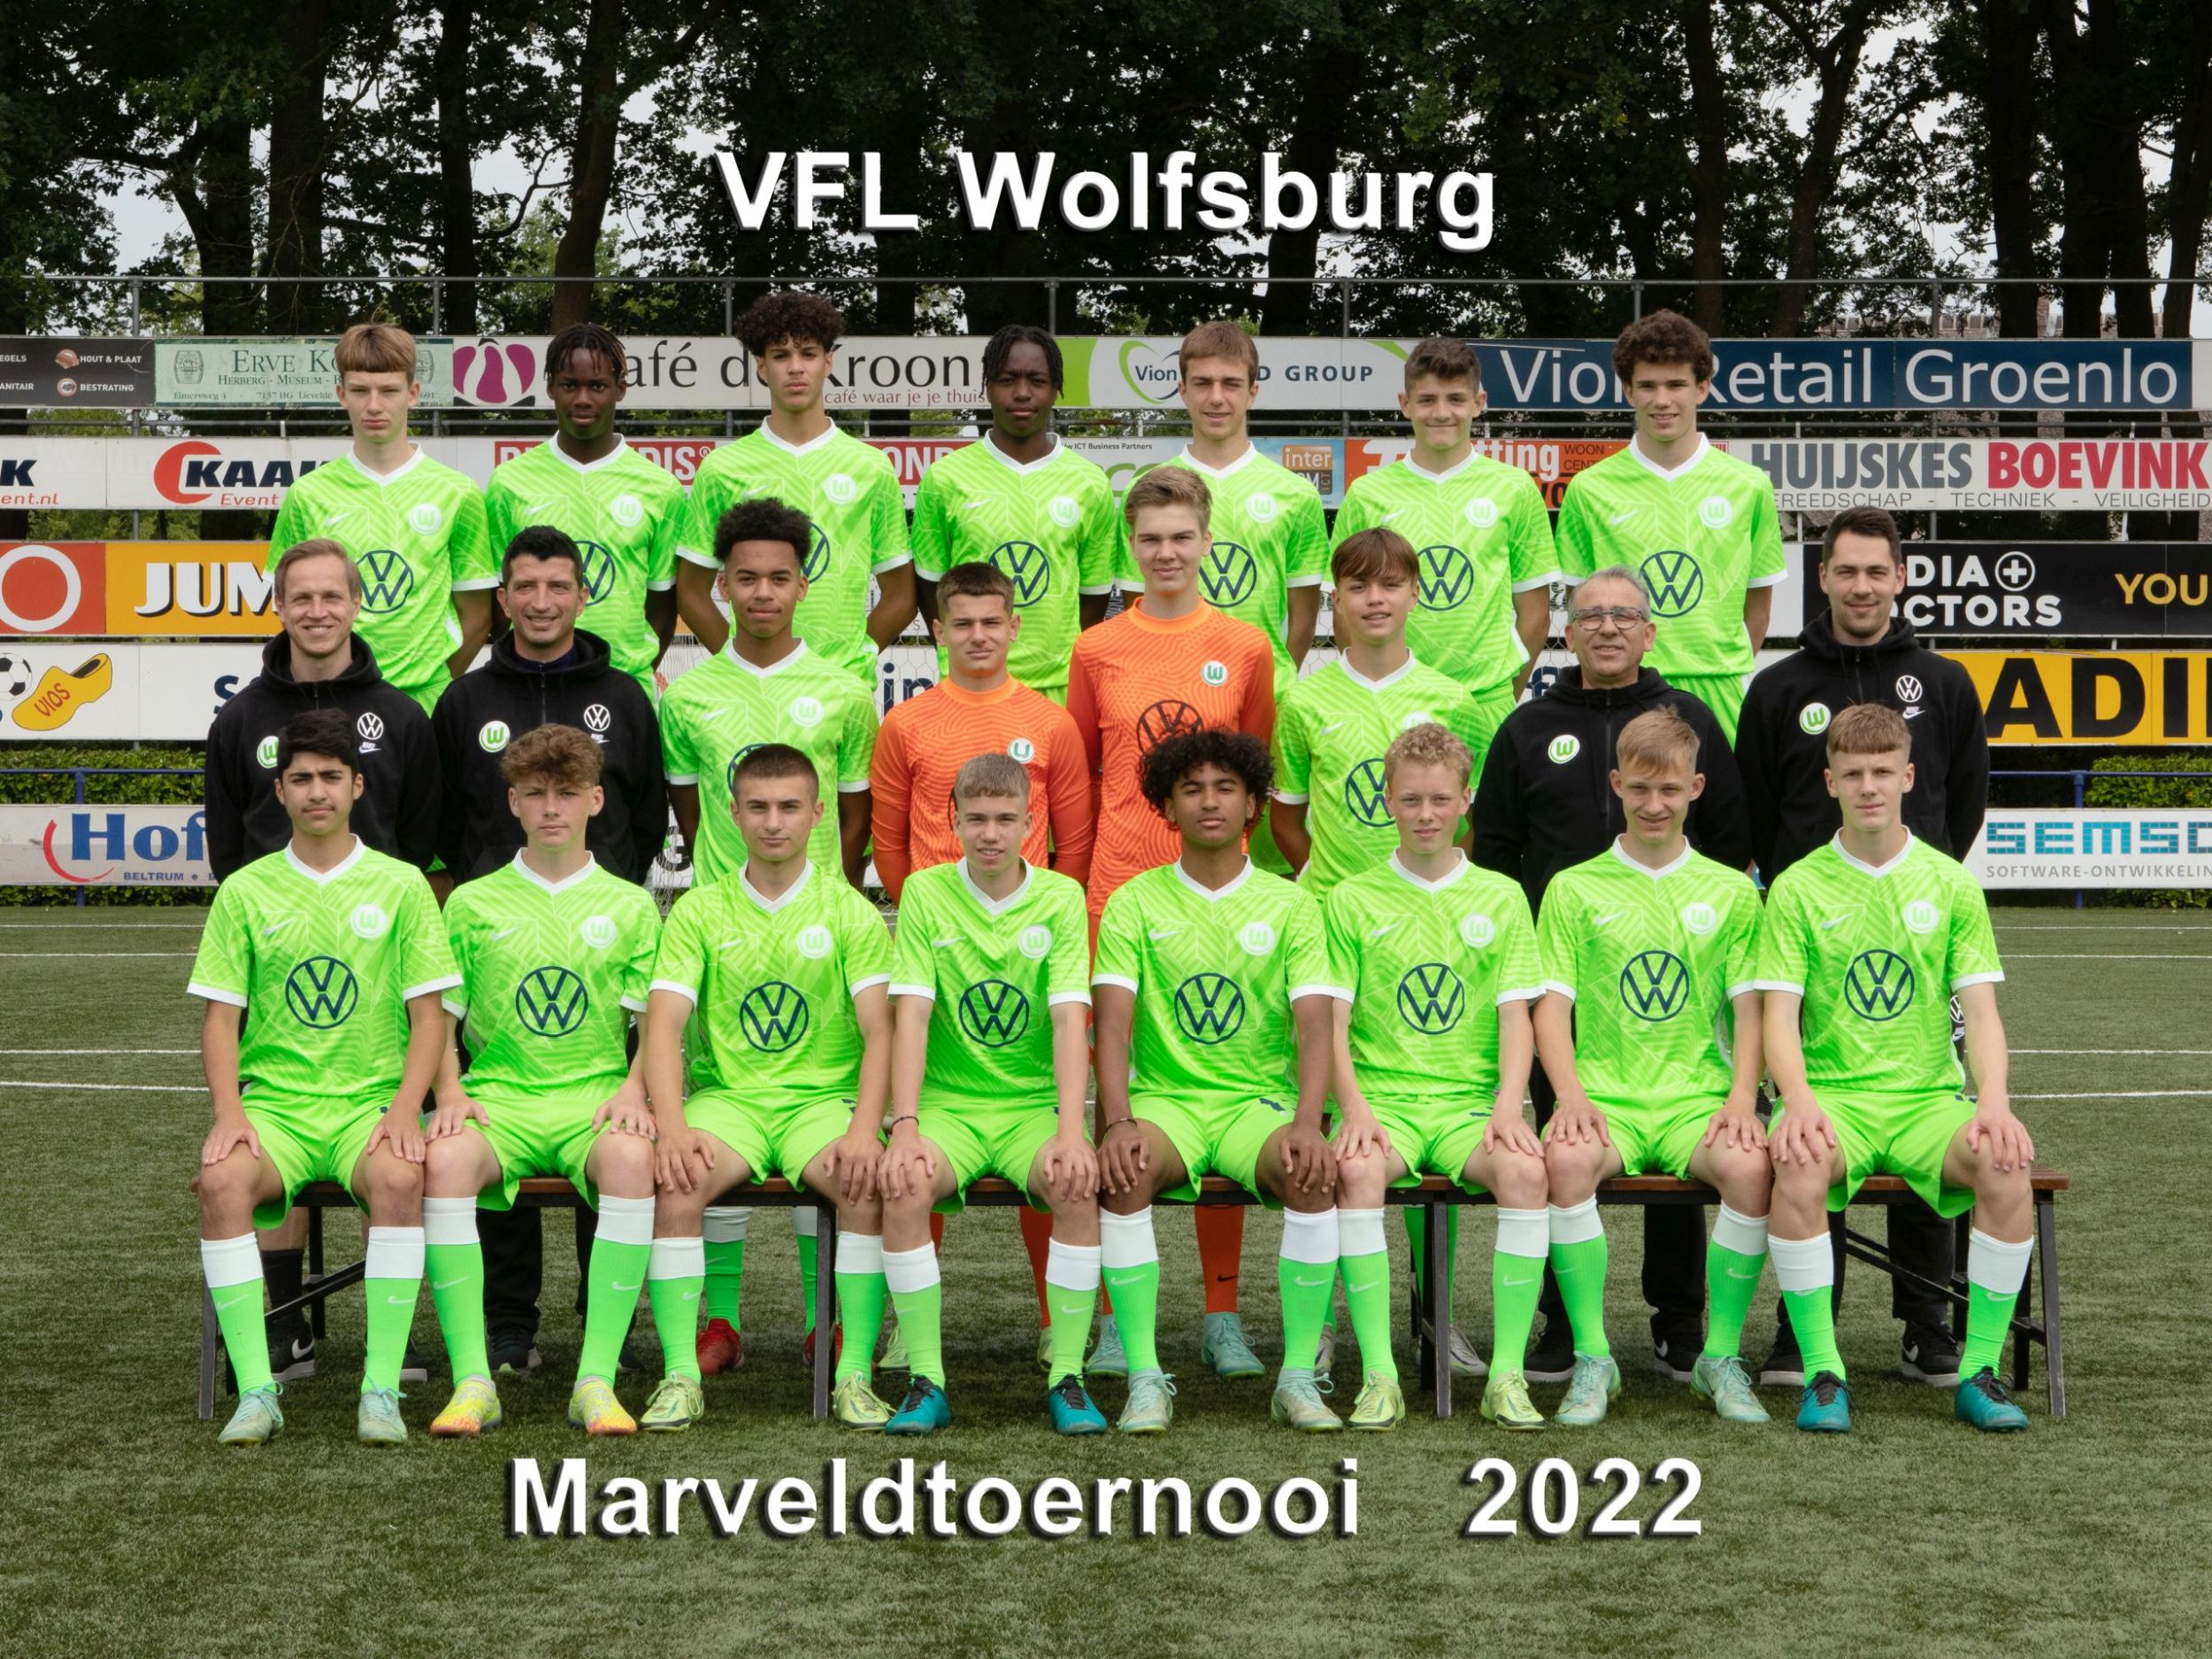 Marveld Tournament 2022 - Team VfL Wolfsburg